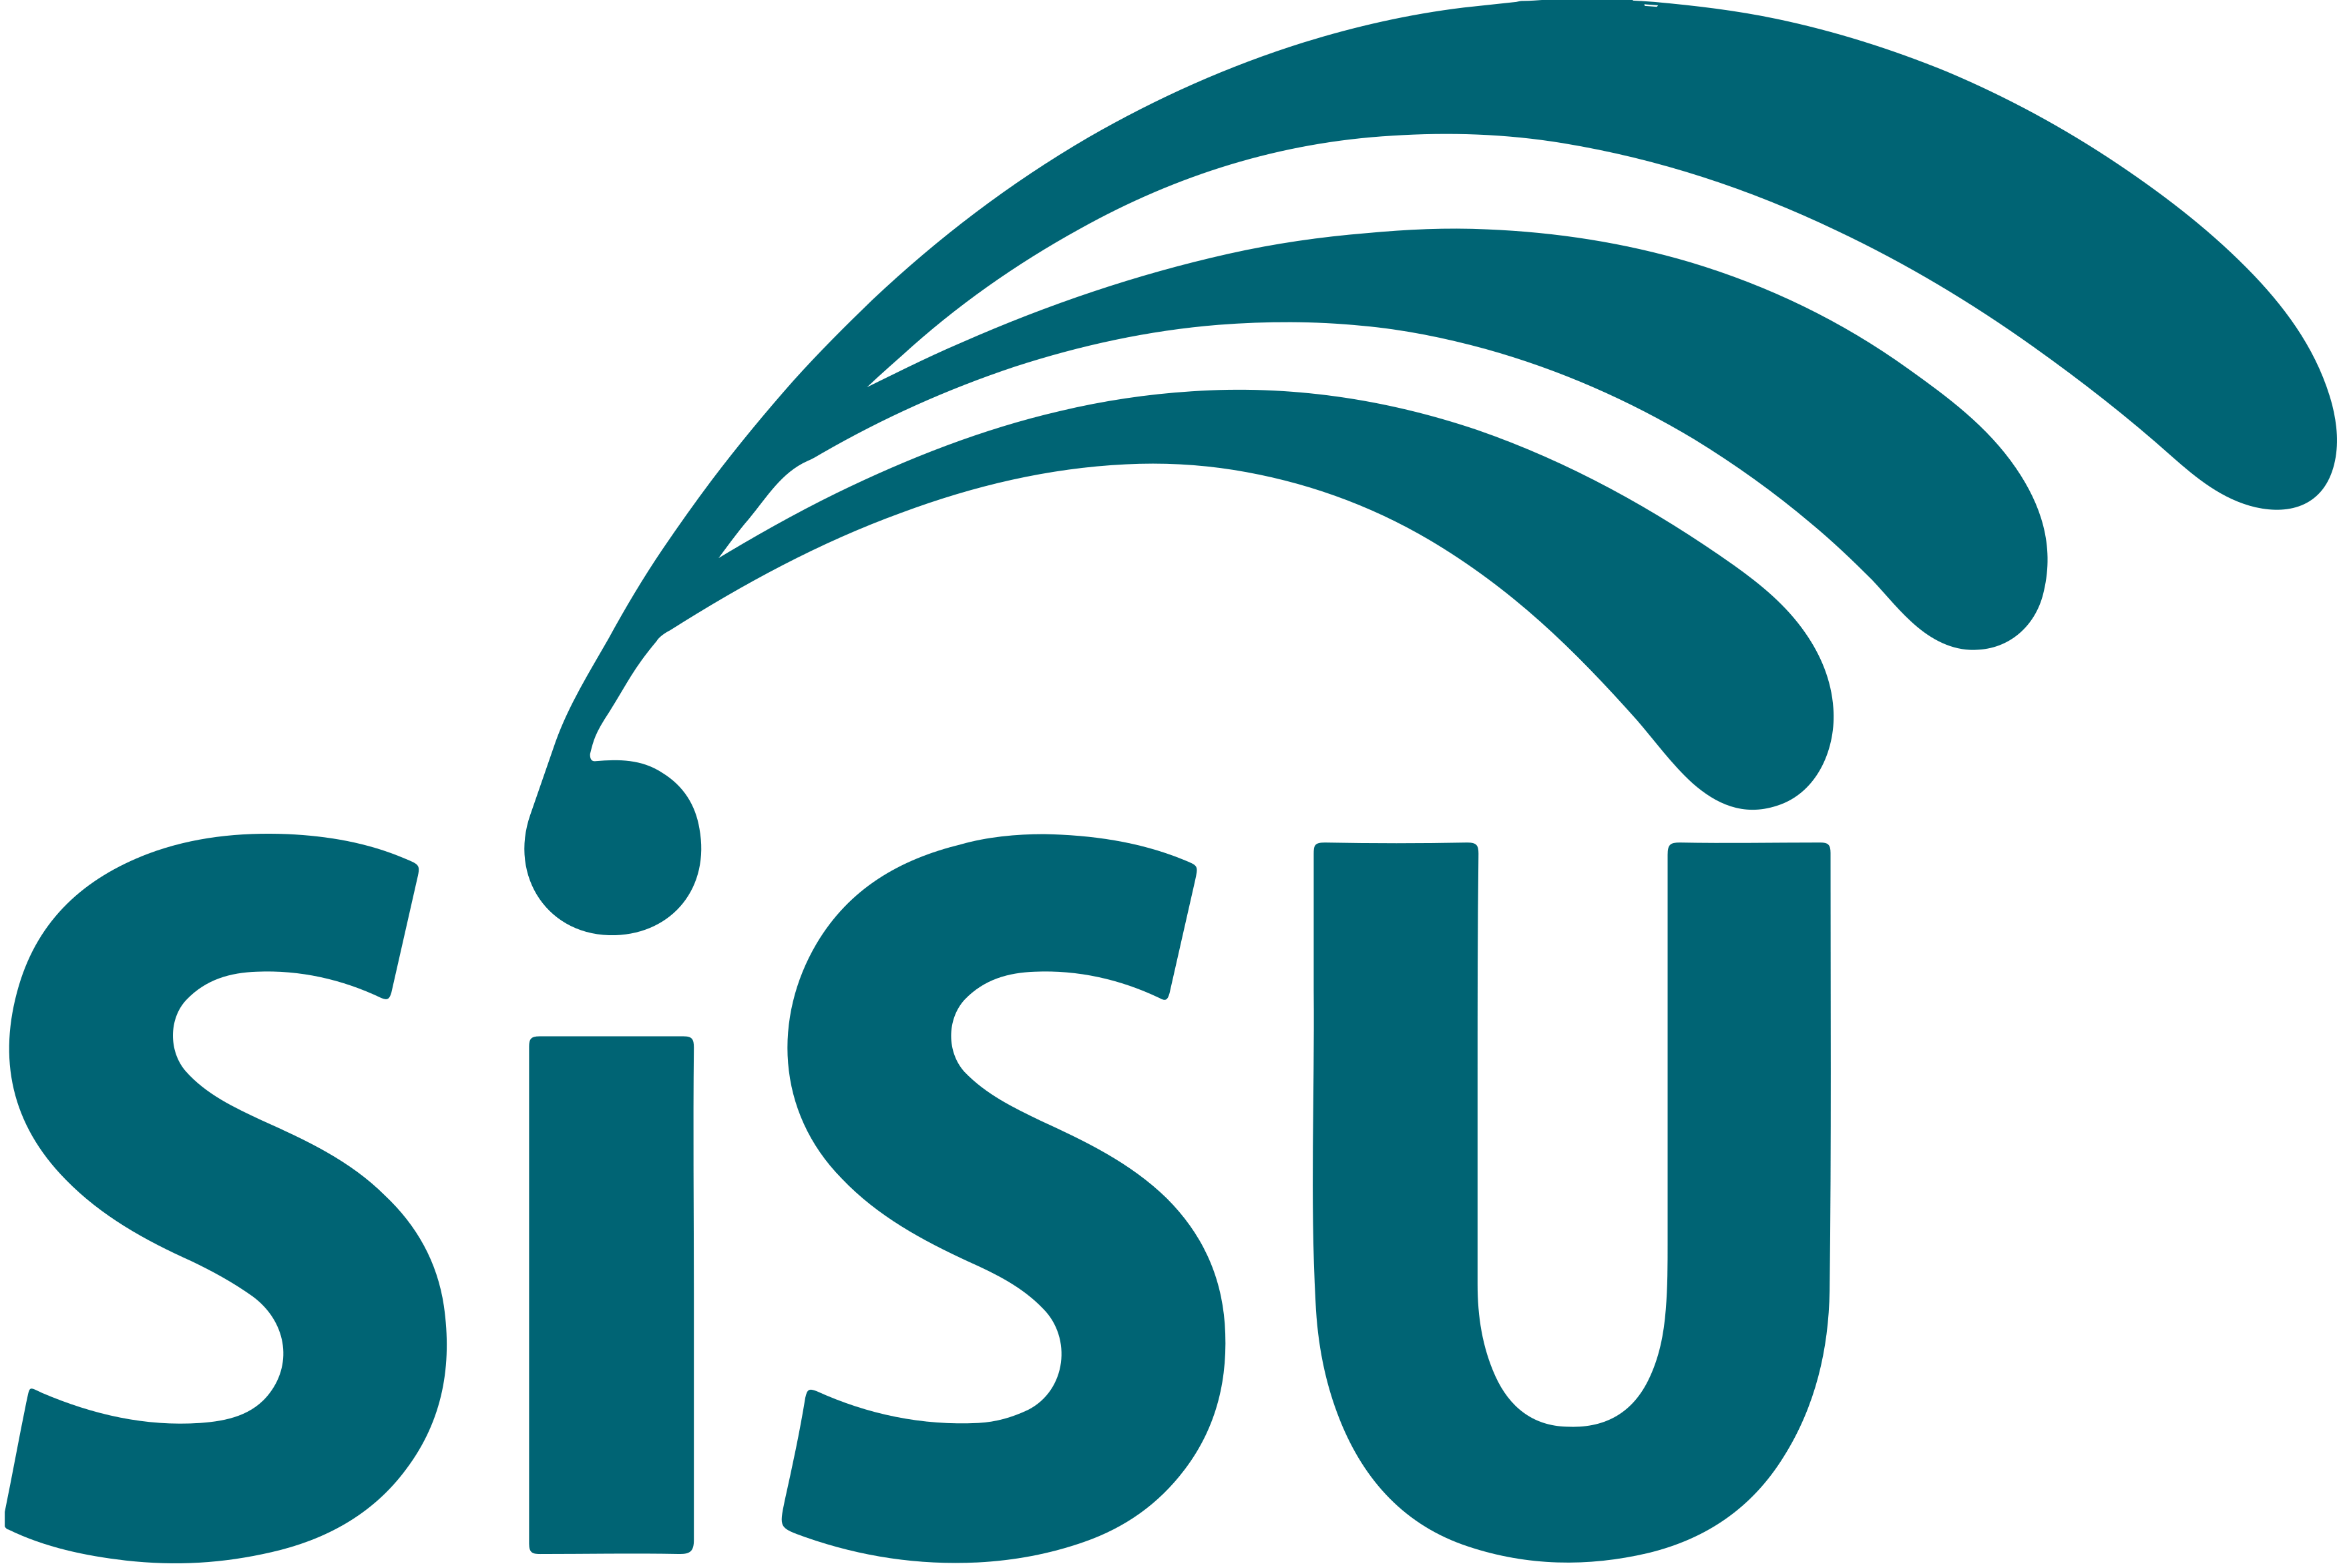 Sisu Logo - Sisu logo png 1 » PNG Image